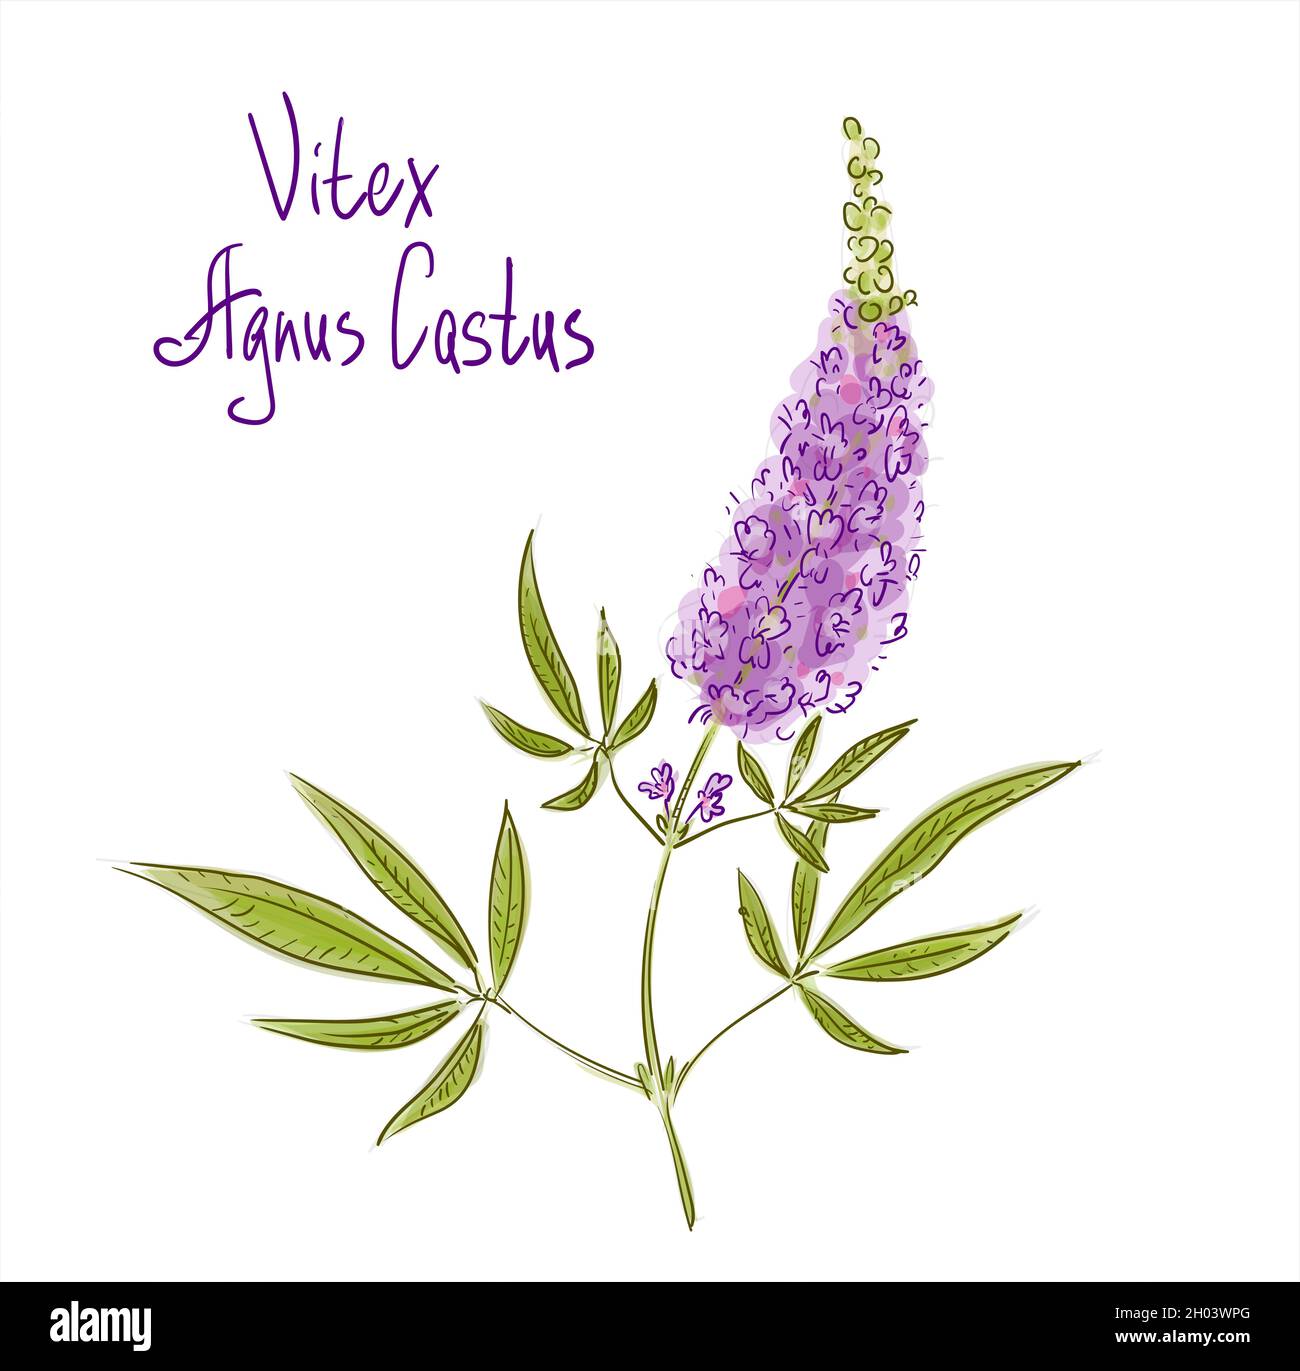 Vitex agnus-castus, auch vitex genannt, keuscher Baum oder Chastetree, Chasteberry, Abrahams Balsam, lila Chastetree oder Mönchspfeffer. Vektorgrafik Stock Vektor